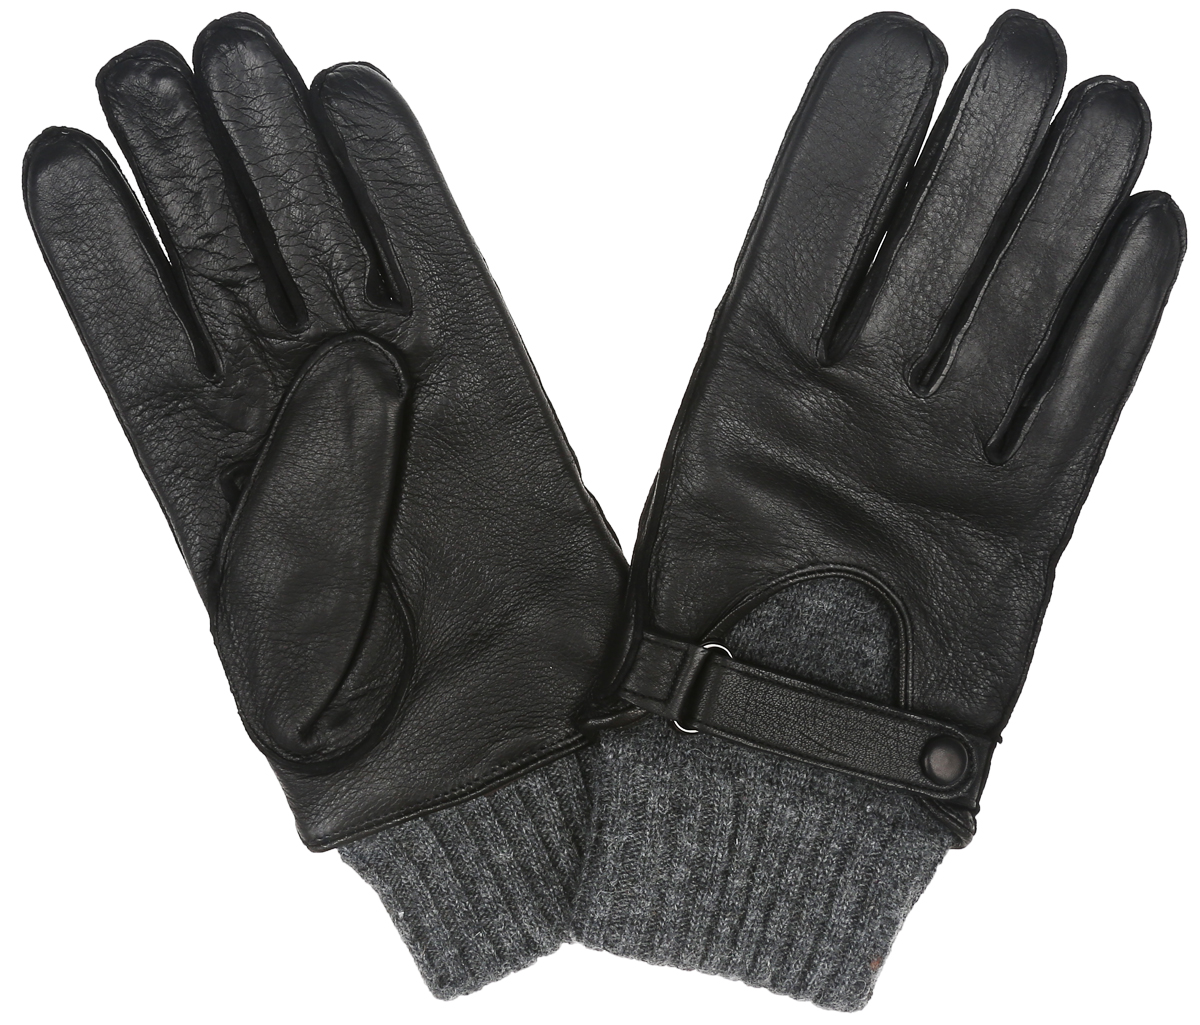 Перчатки мужские Eleganzza, цвет: черный, серый. OS455. Размер 10